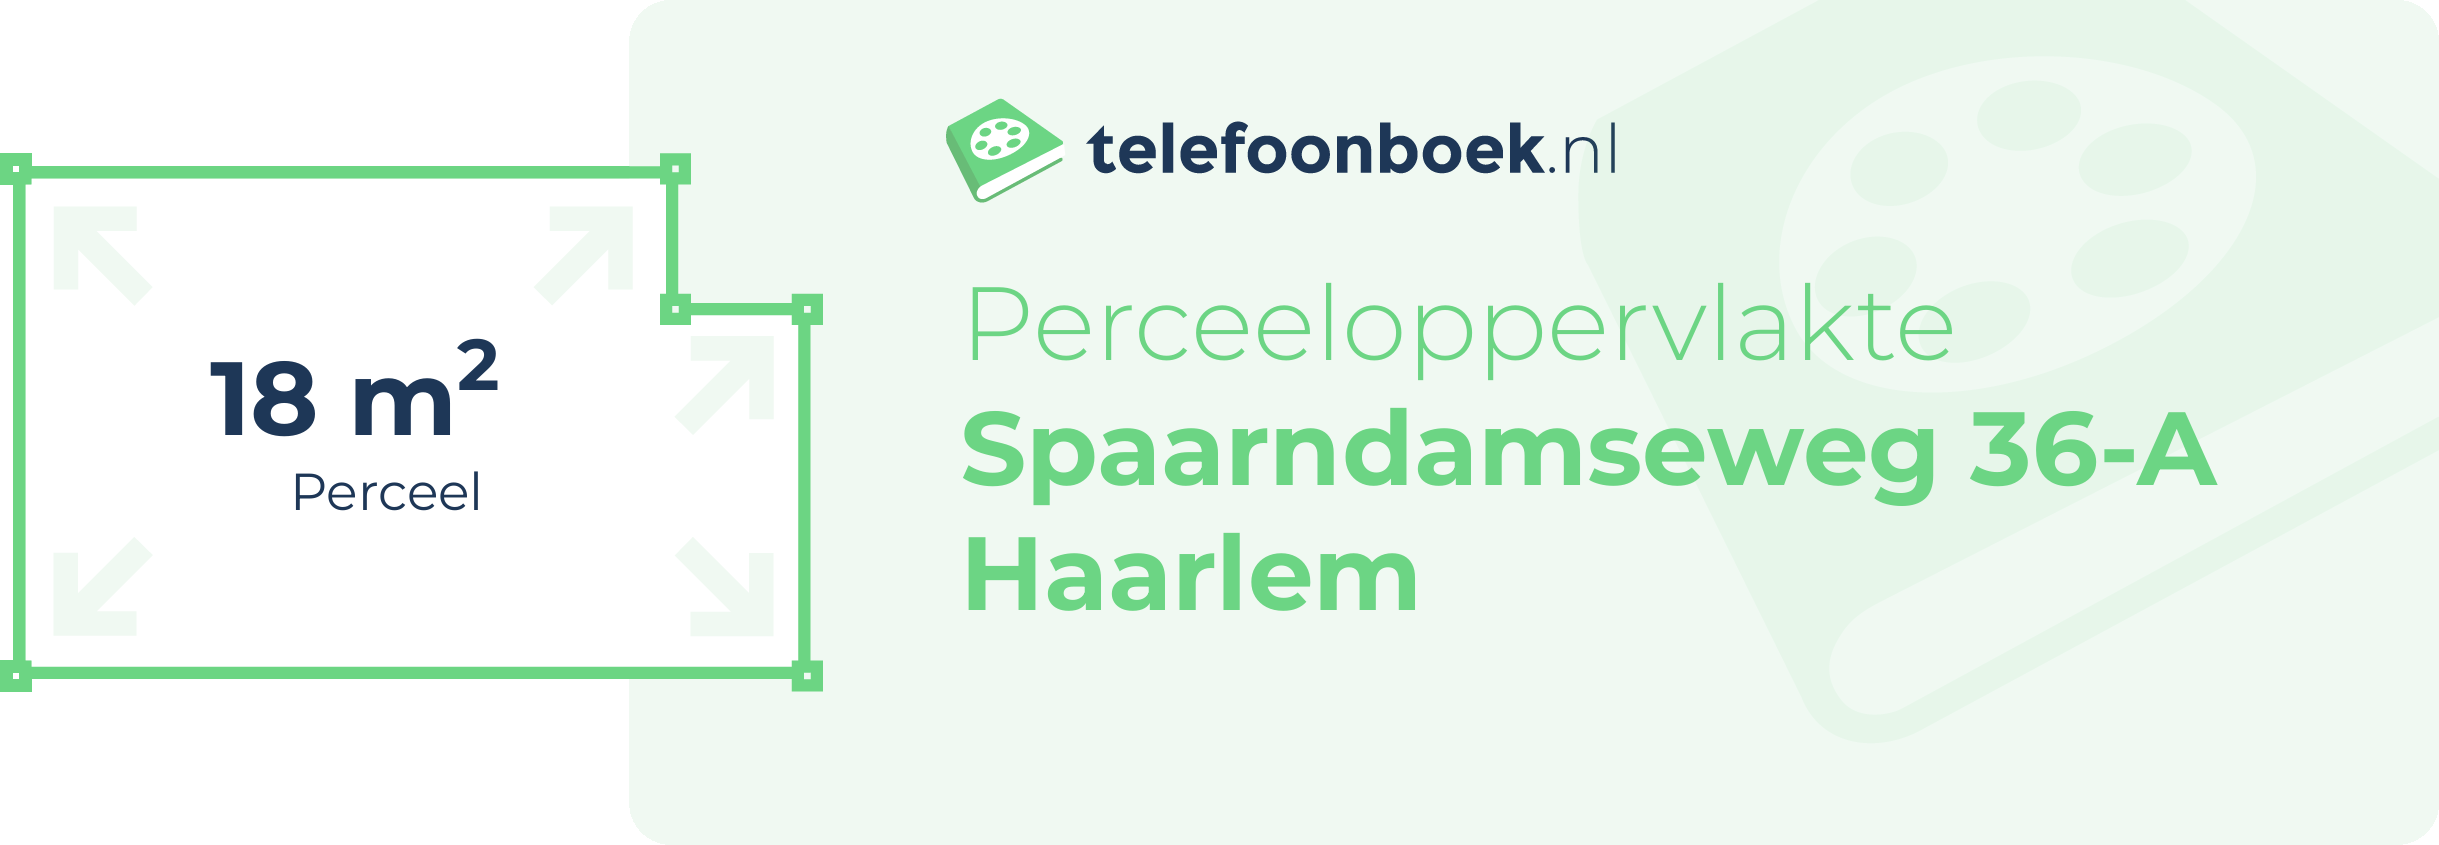 Perceeloppervlakte Spaarndamseweg 36-A Haarlem